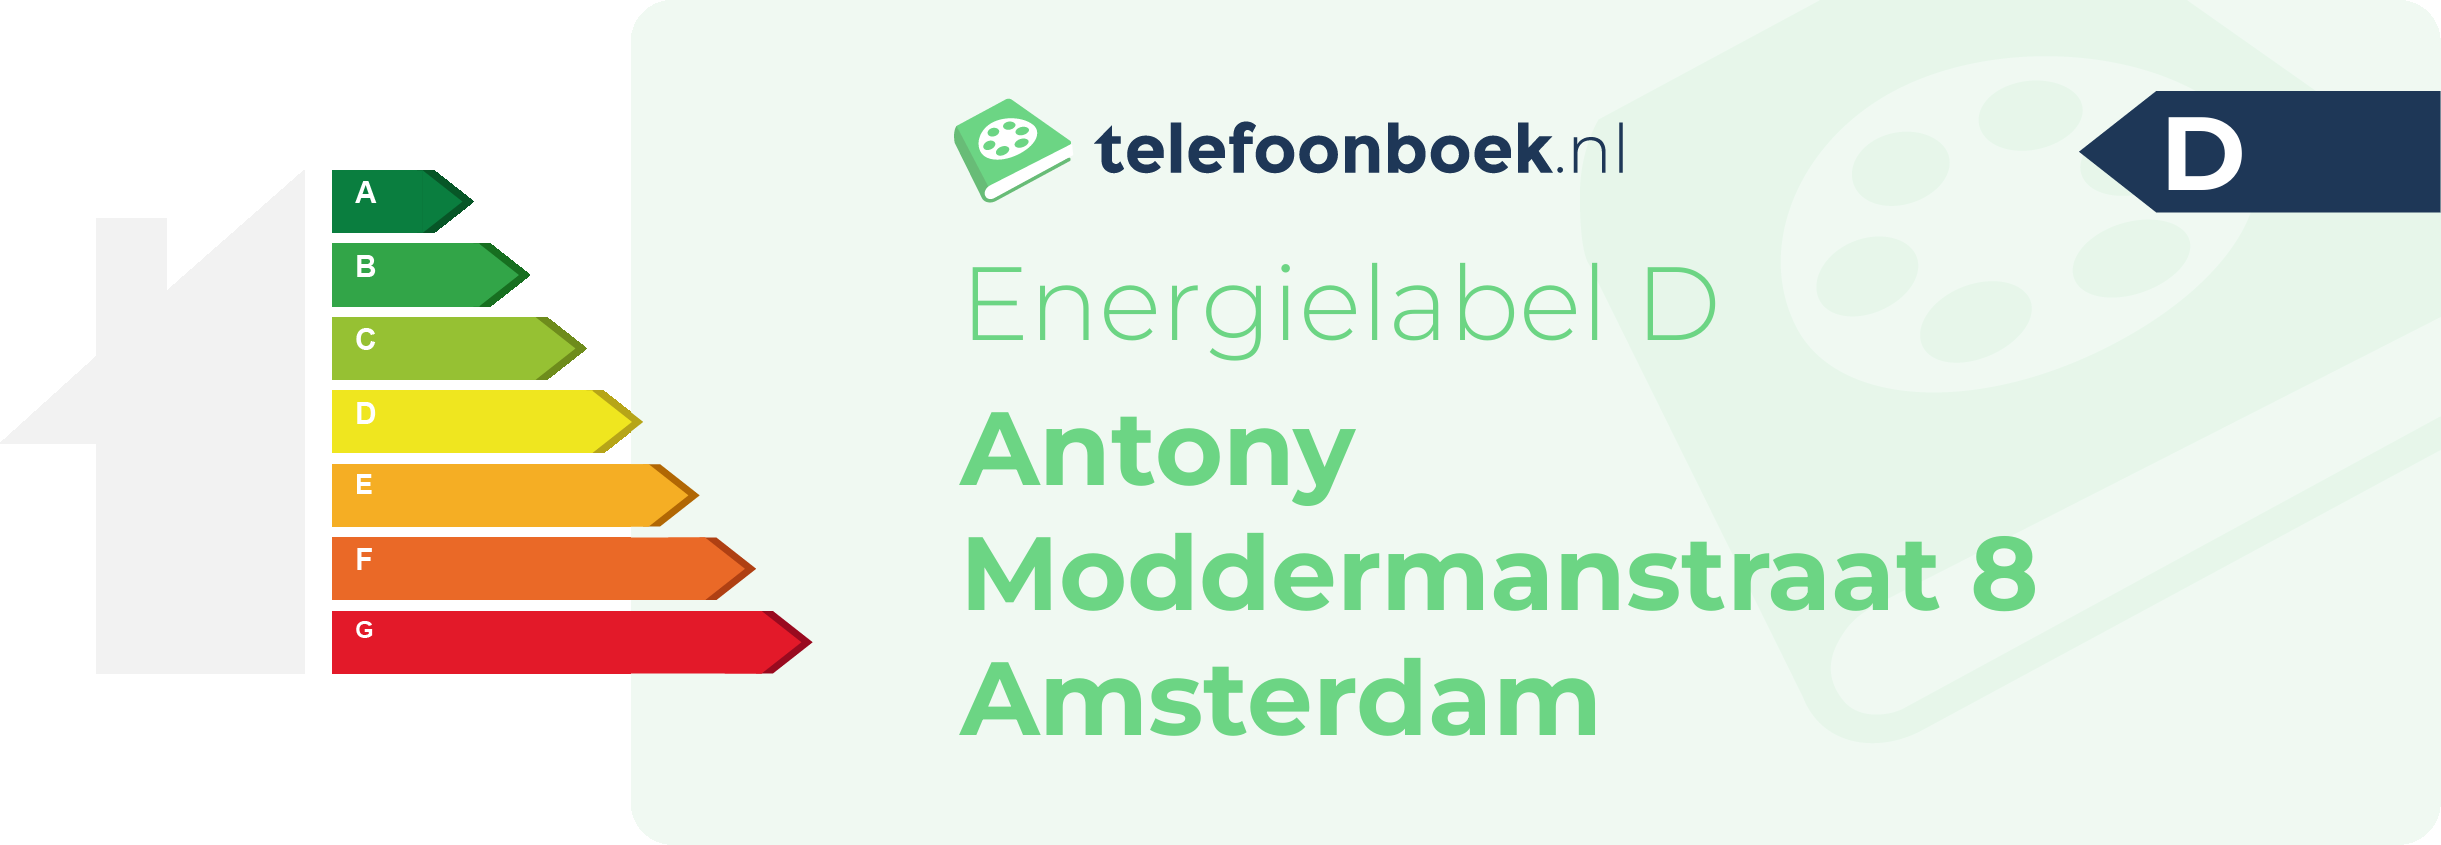 Energielabel Antony Moddermanstraat 8 Amsterdam